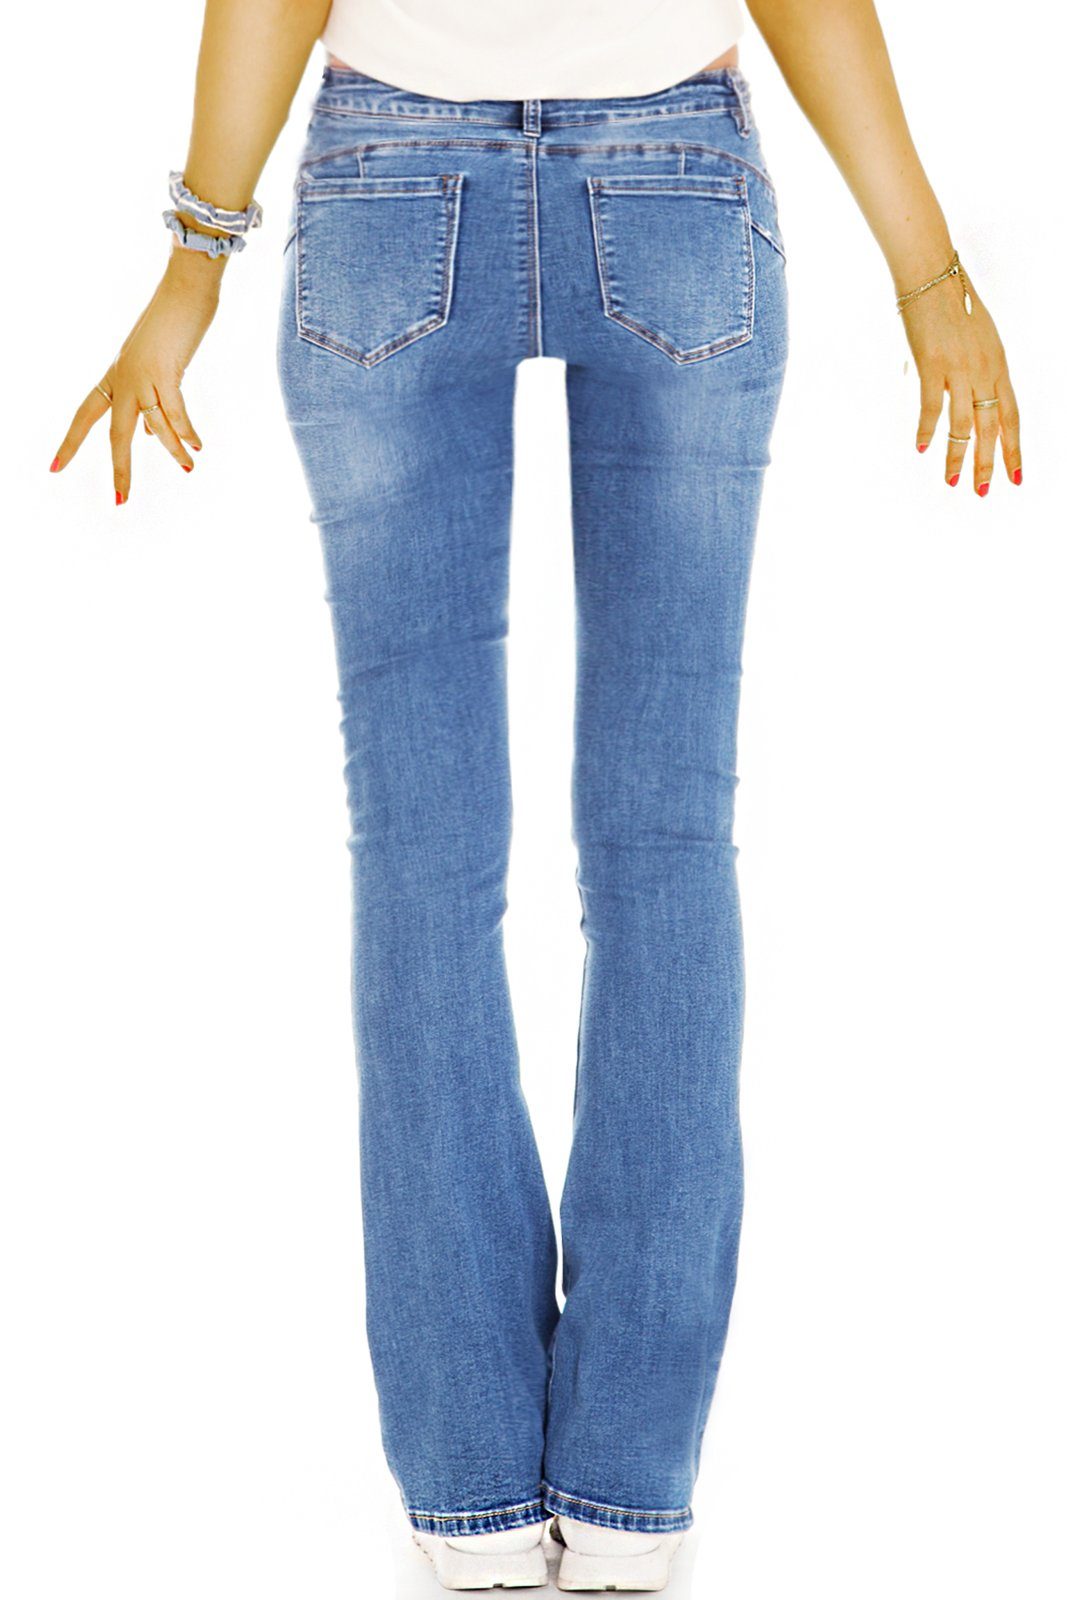 Bootcut-Jeans dunkelblau - 5-Pocket-Style Hosen Denim Waist mit be bequeme Stretch-Anteil, - styled Medium Bootcut Jeans Damen j44p Stretch